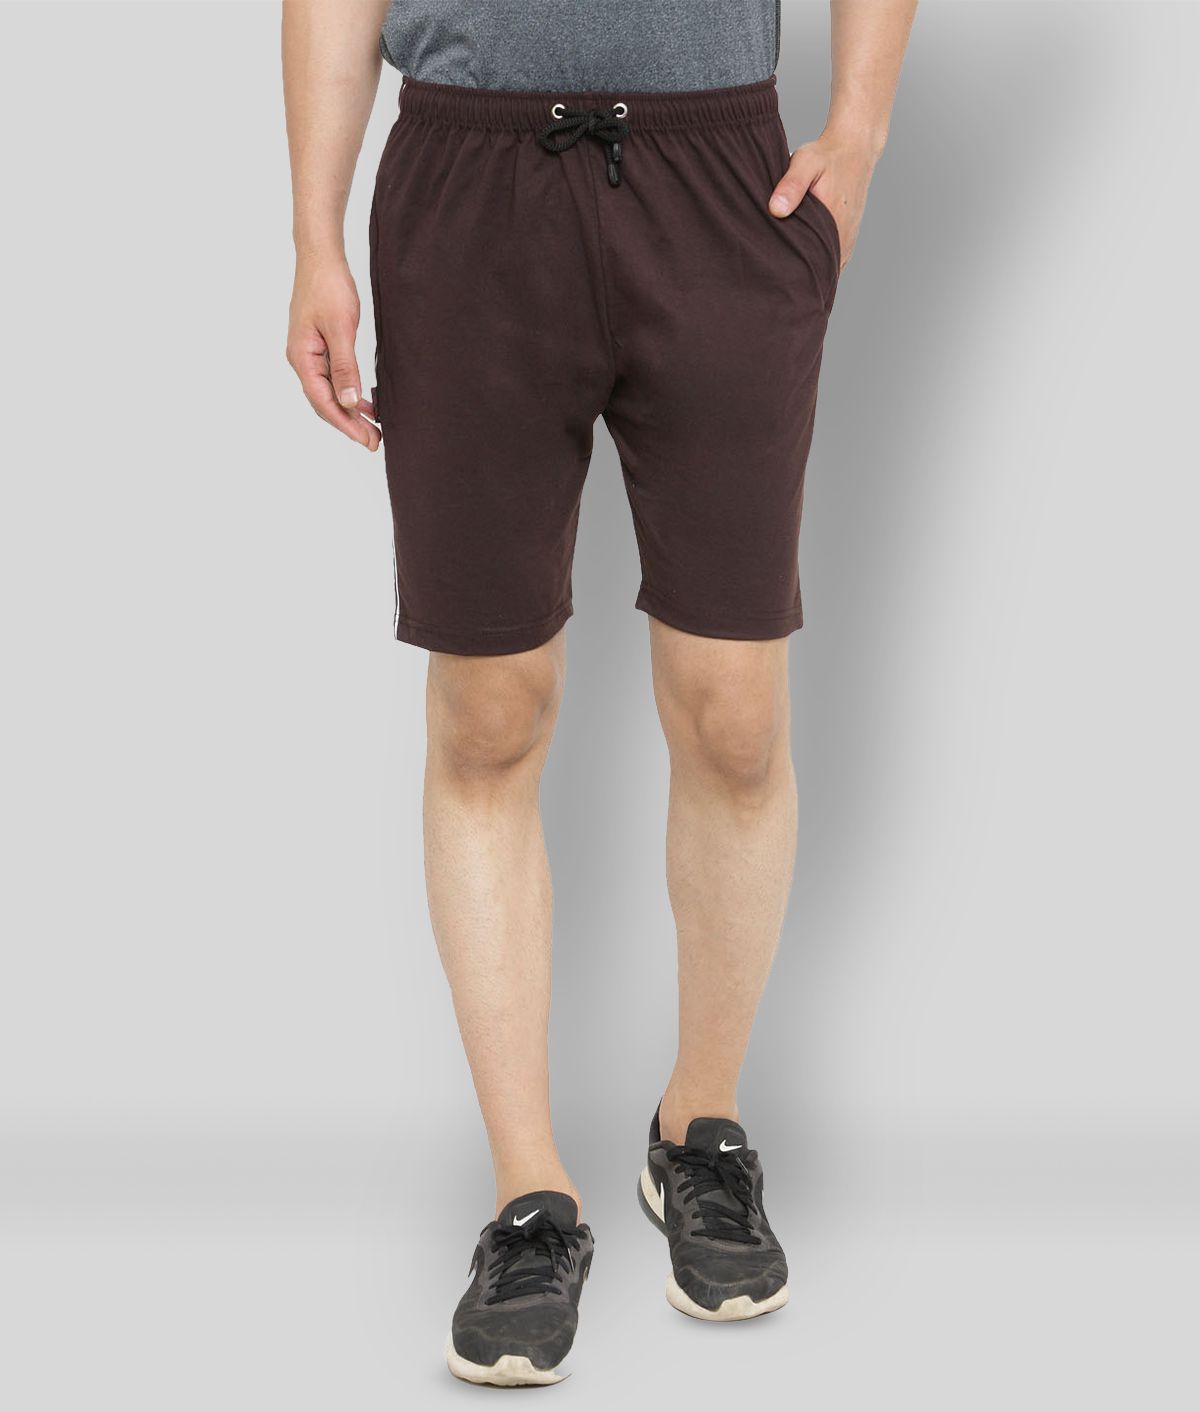     			Uzarus - Brown Cotton Blend Men's Shorts ( Pack of 1 )